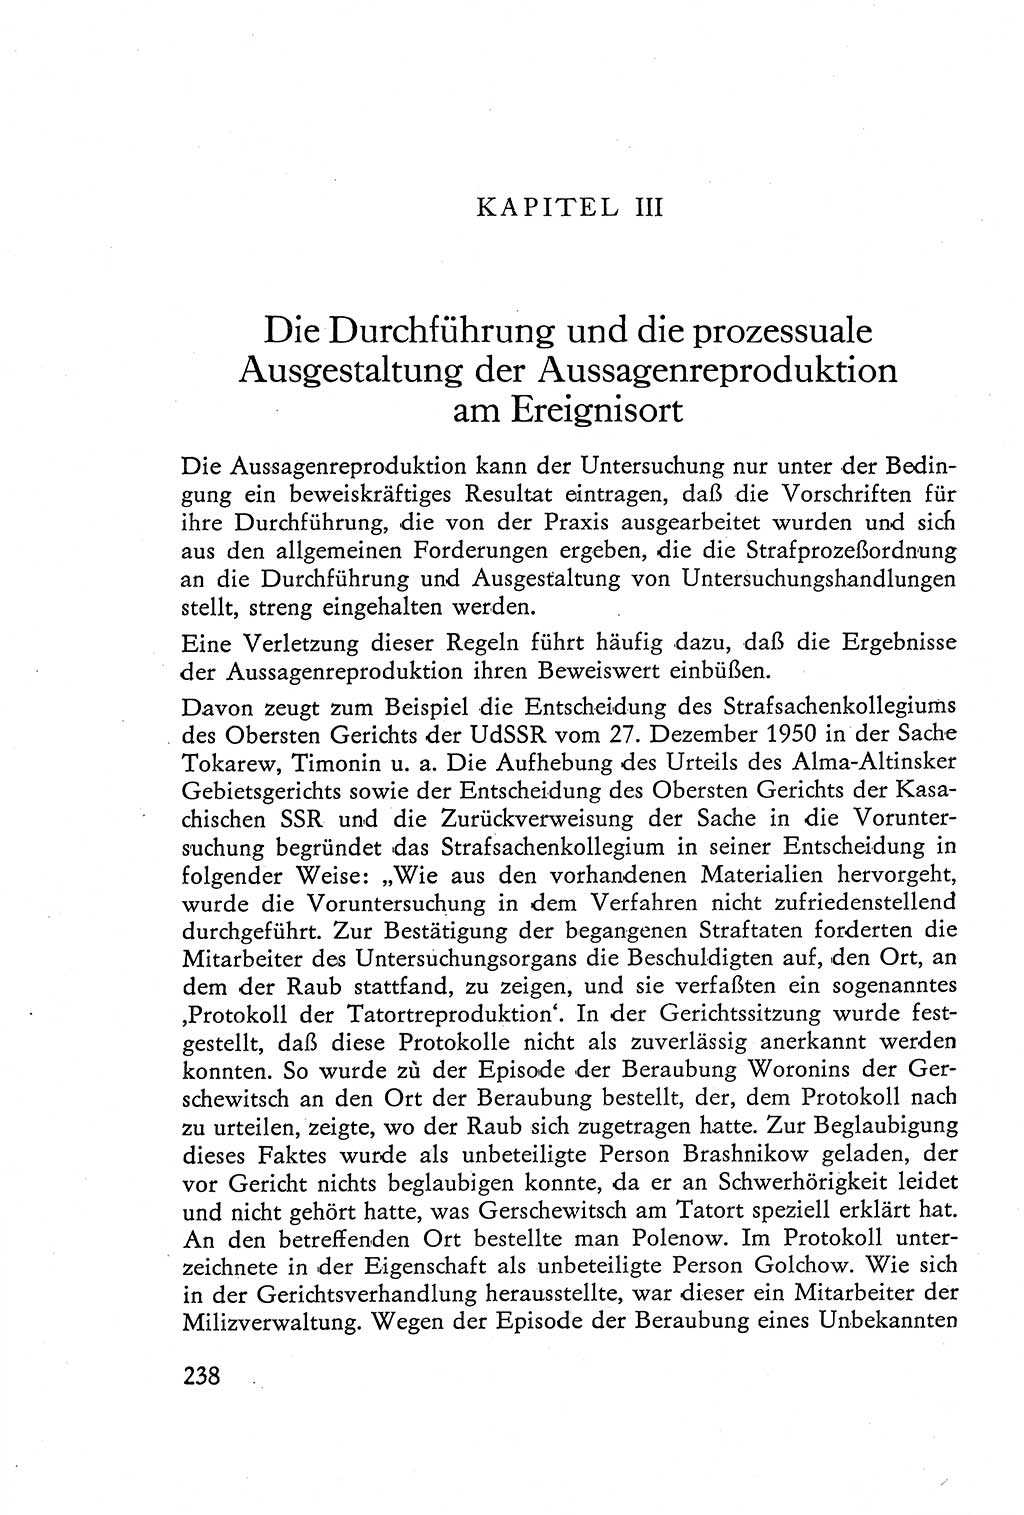 Die Vernehmung [Deutsche Demokratische Republik (DDR)] 1960, Seite 238 (Vern. DDR 1960, S. 238)